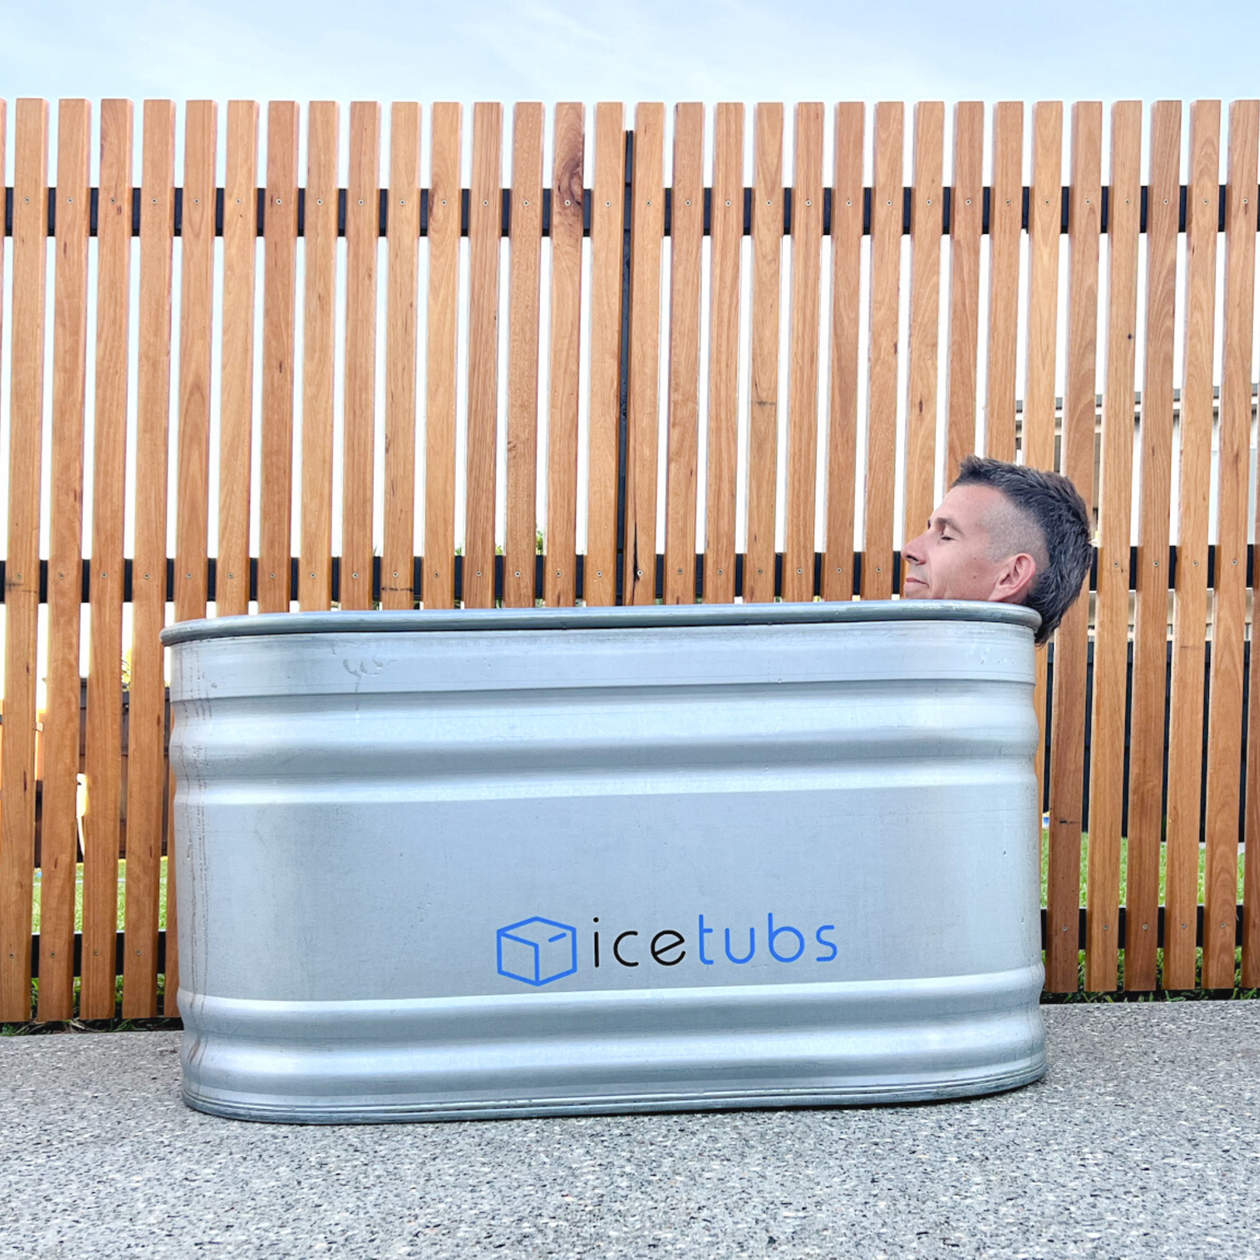 Ice Tubs Australia